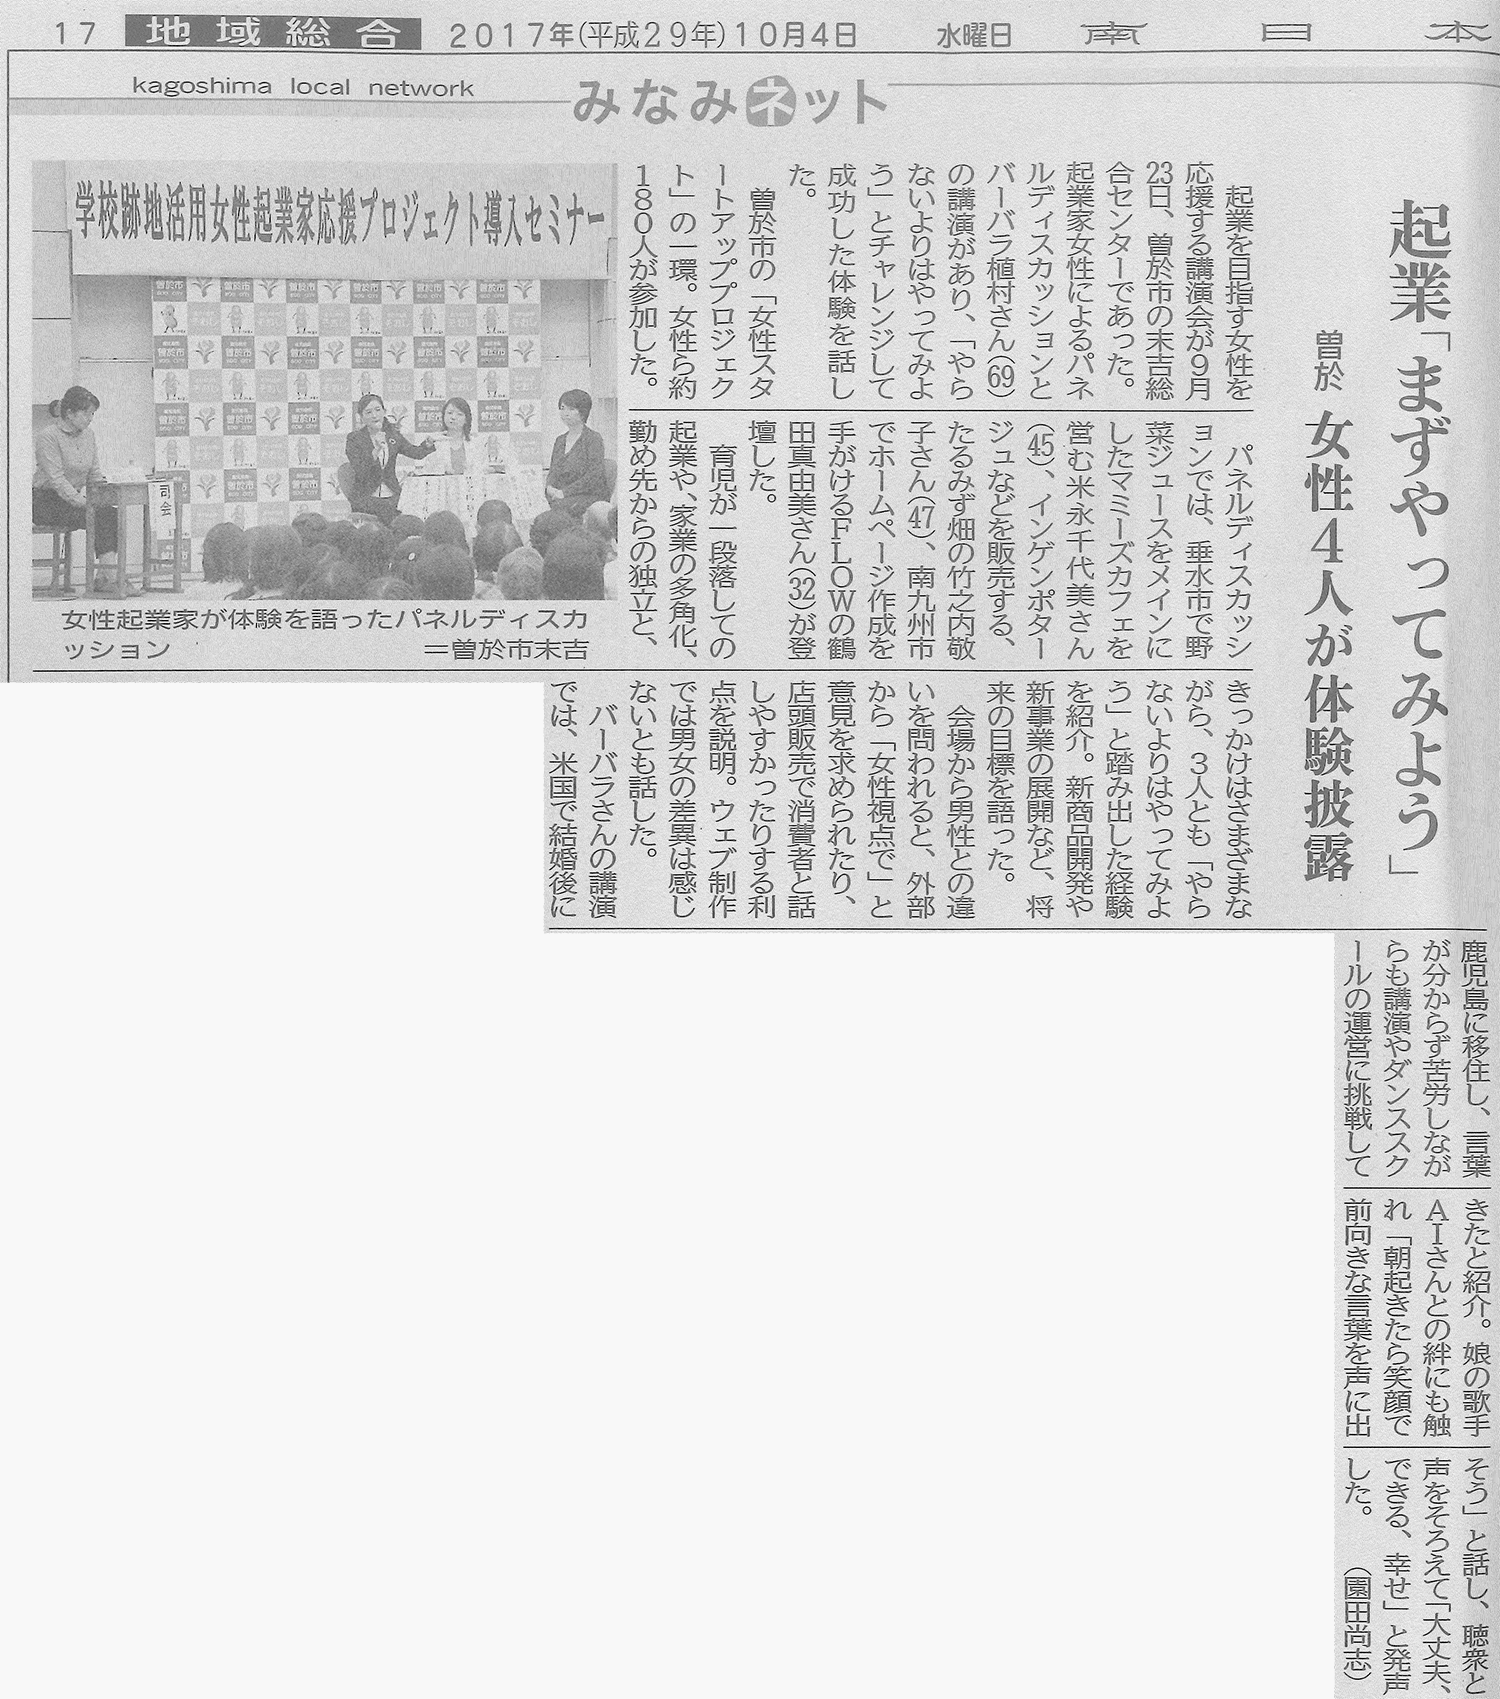 曽於市女性起業家応援プロジェクト導入セミナーの様子が南日本新聞で紹介されました